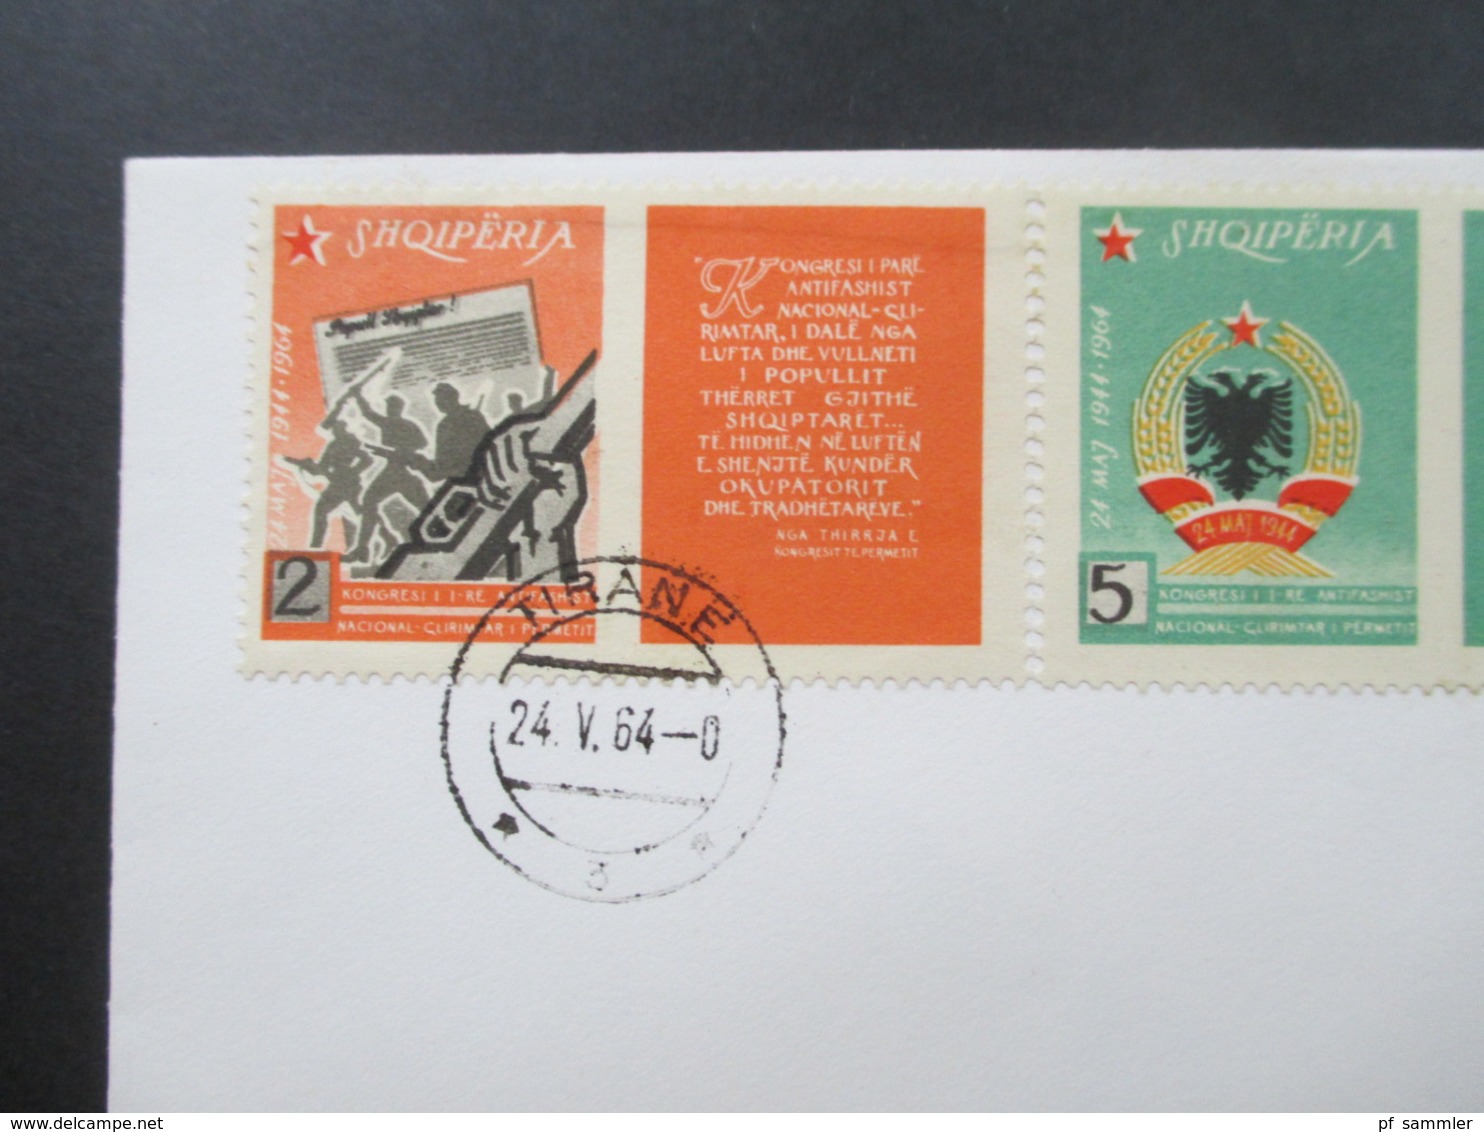 Albanien 1964 Blanko FDC auch Int. Briefmarkenausstellung Riccione, Motive Vögel und Olympische Sommerspiele